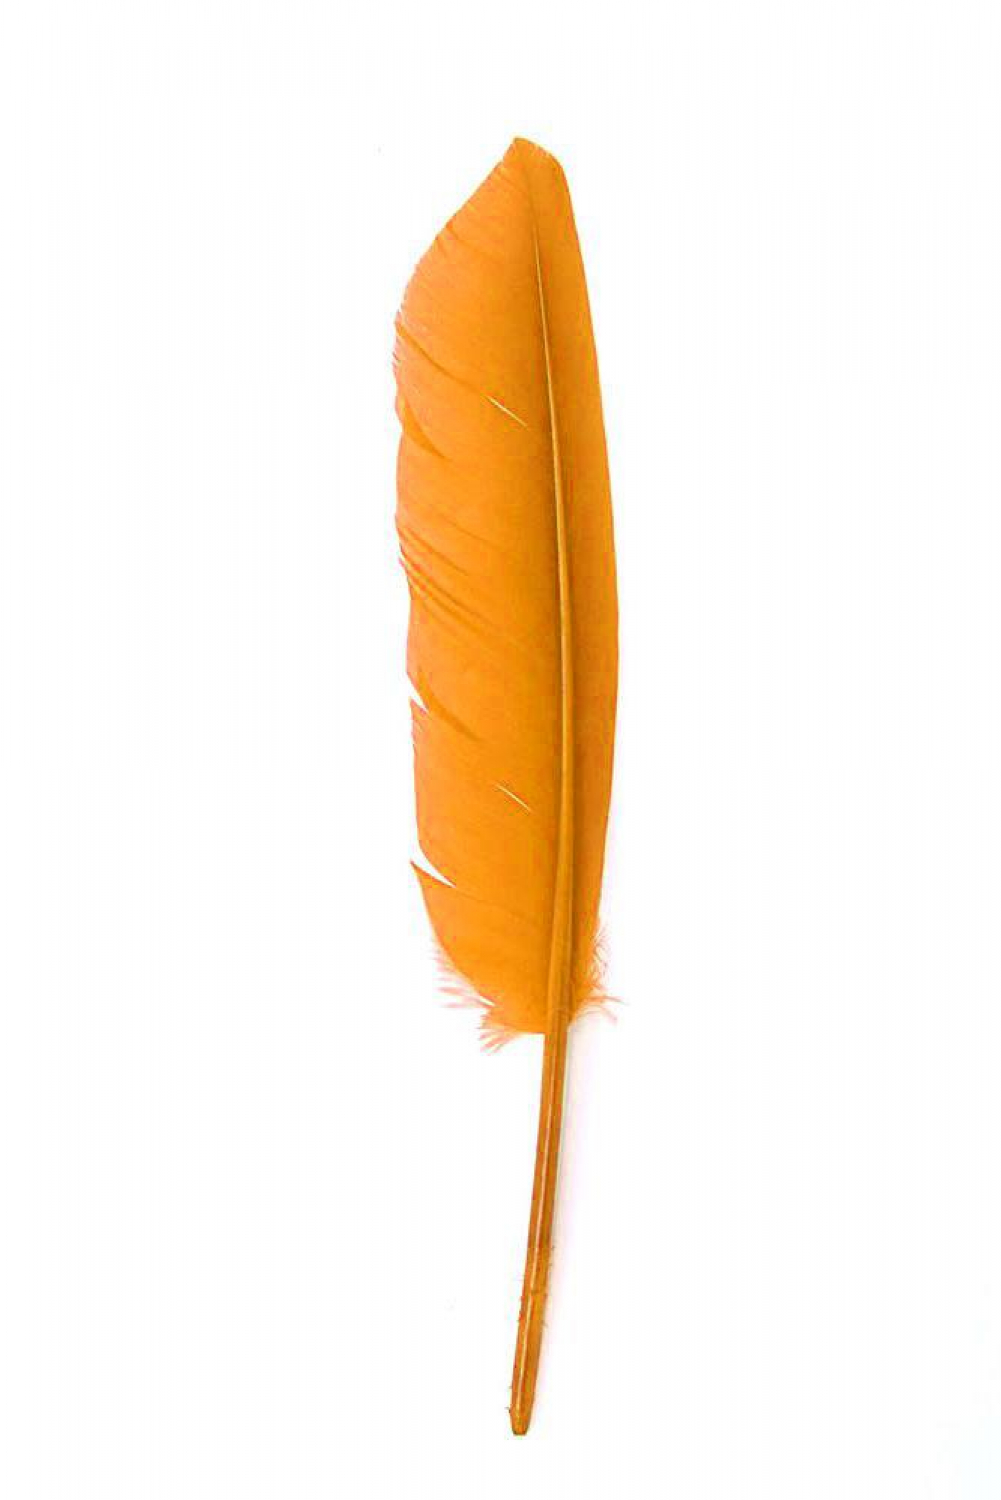 Goose Pointers 22-27cm, orange, left, Pack of 10